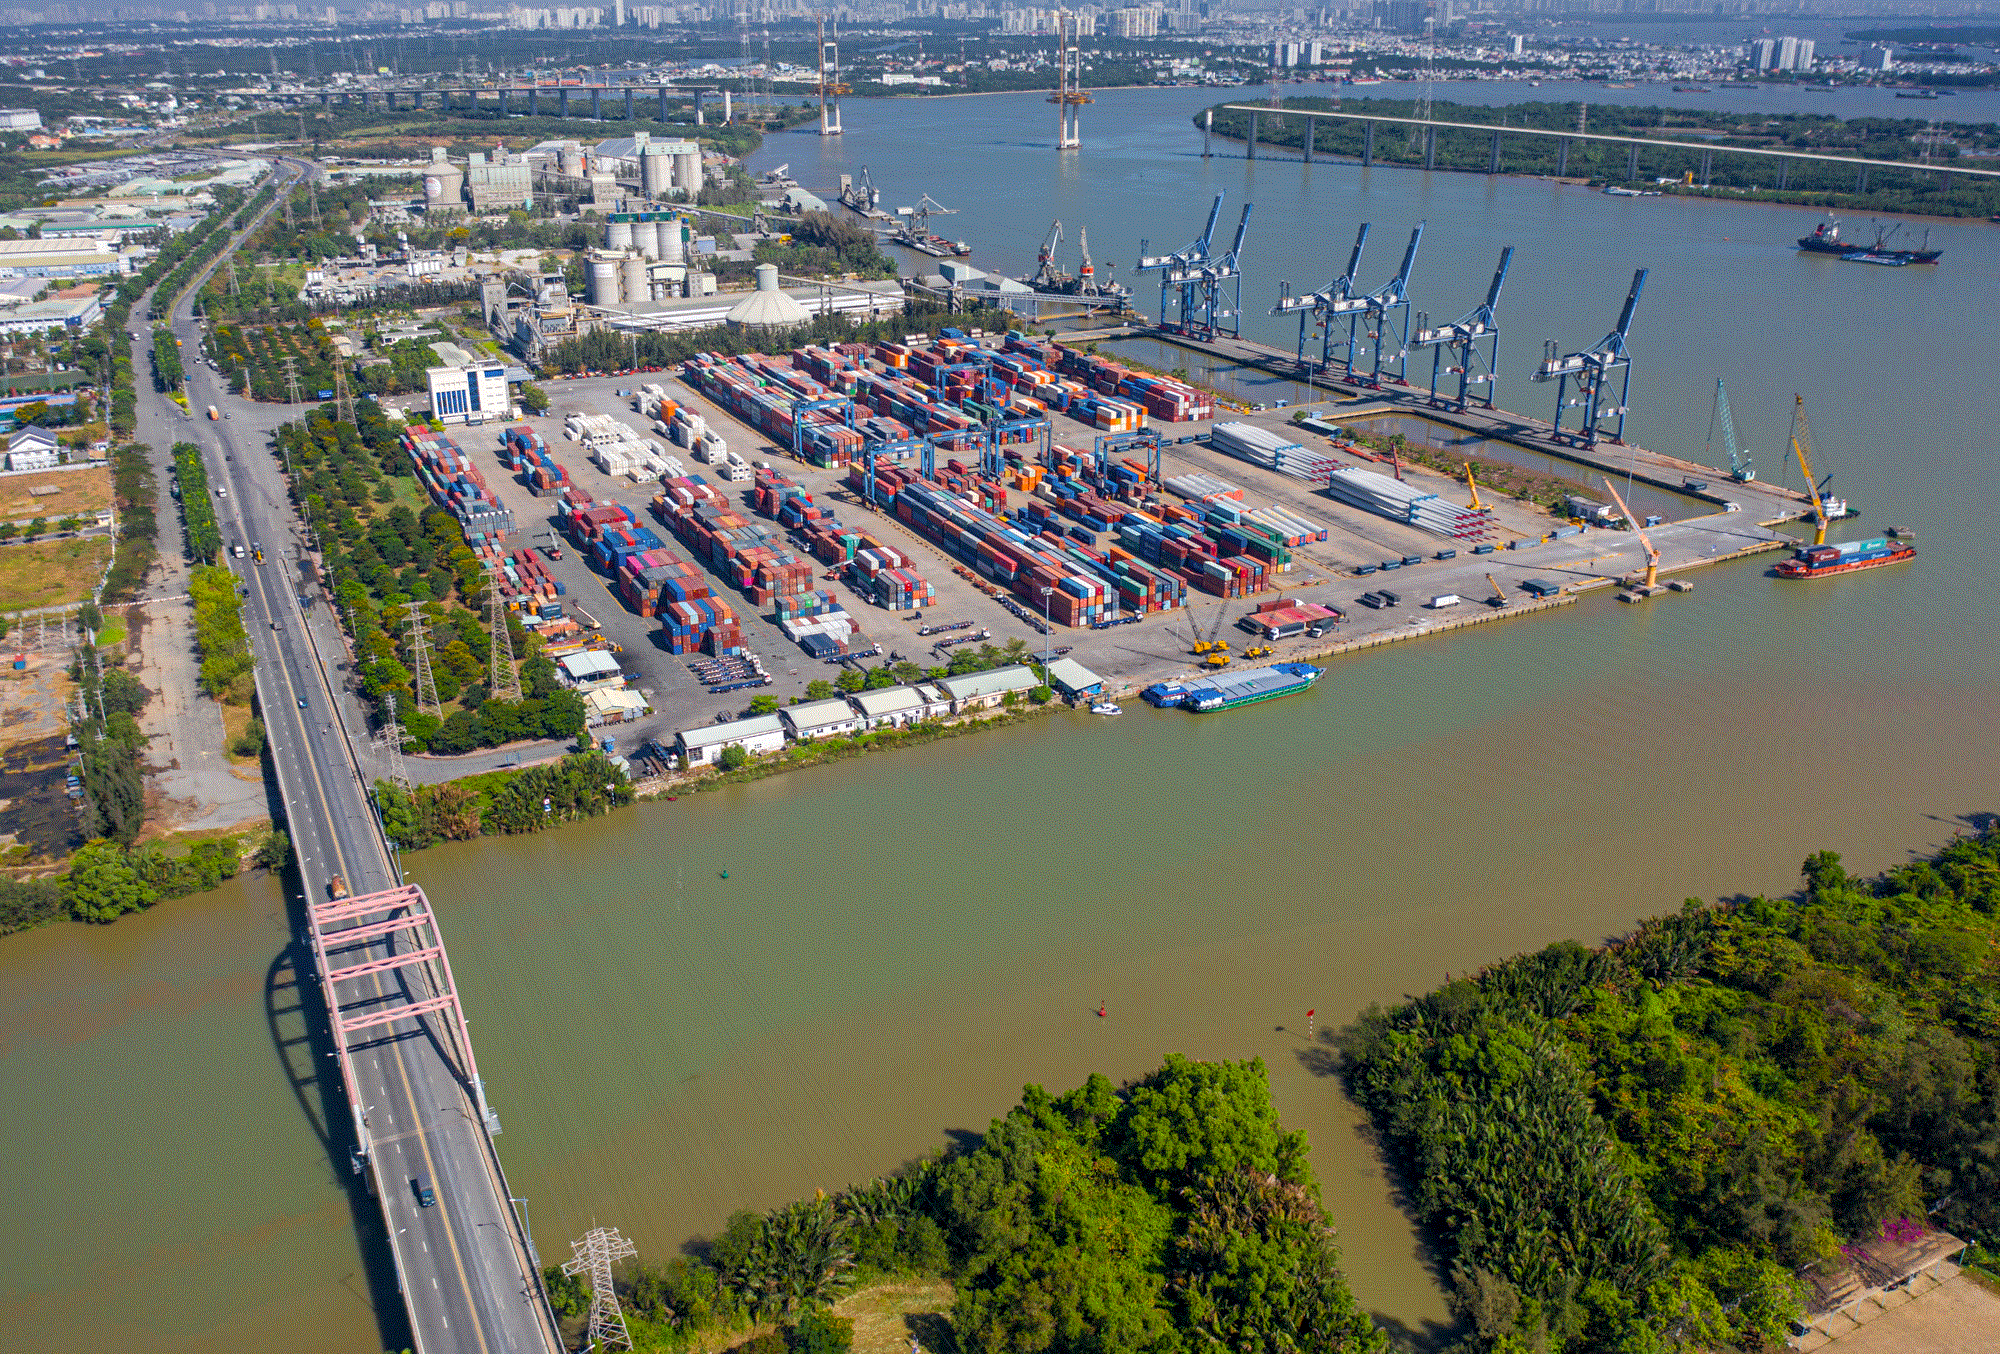 ‏K‏‏hu công nghiệp ‏‏có đến 3 cảng quốc tế, rộng nhất ‏‏TP. HCM - Ảnh 9.